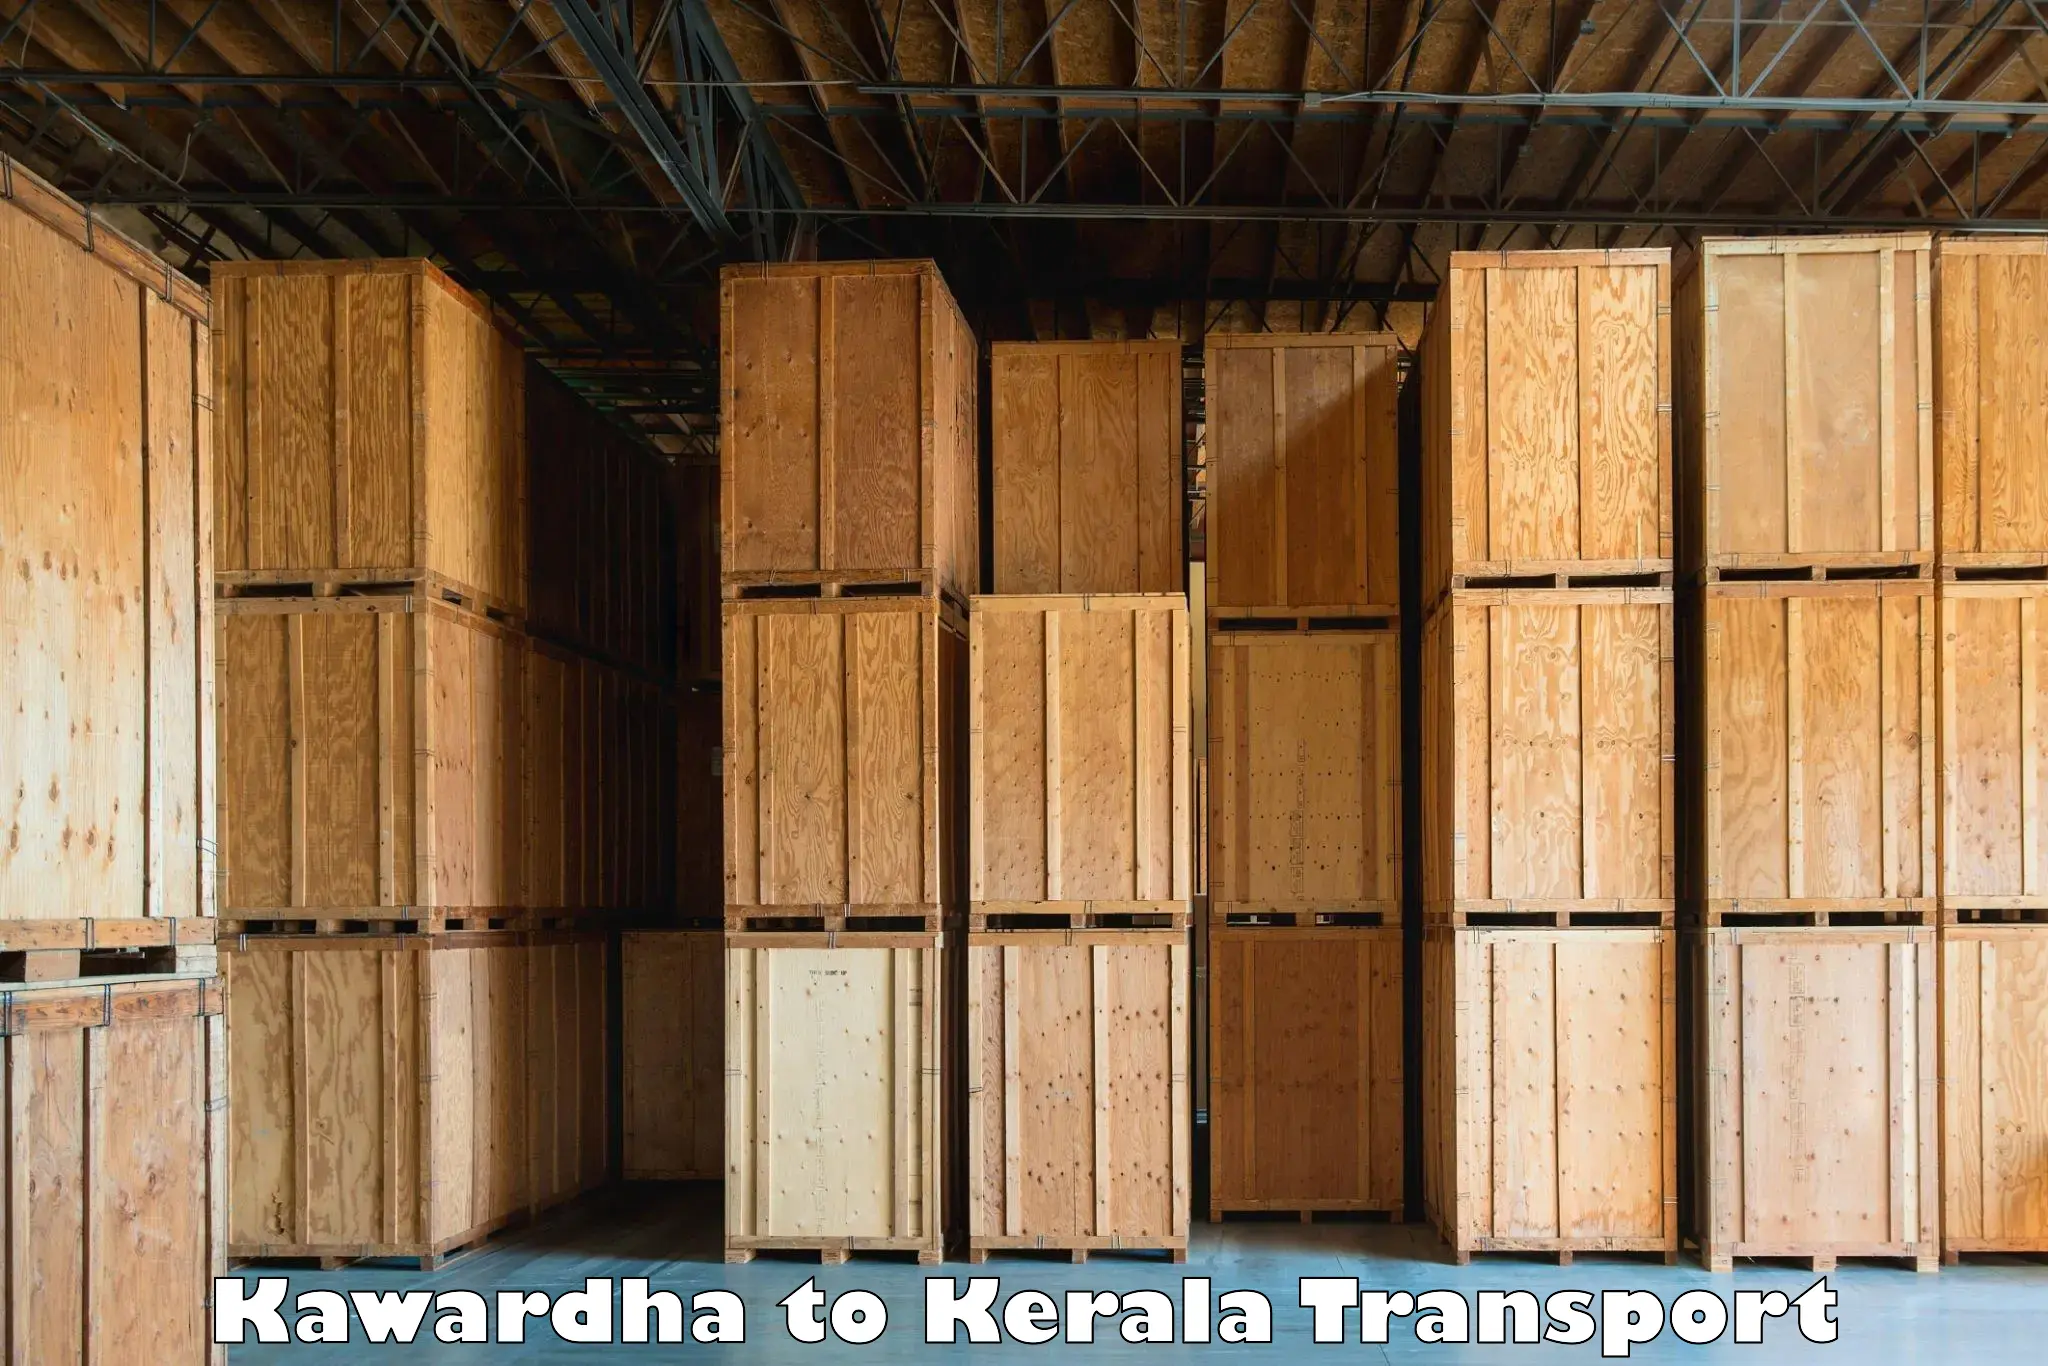 Nearby transport service Kawardha to Vadakkencherry